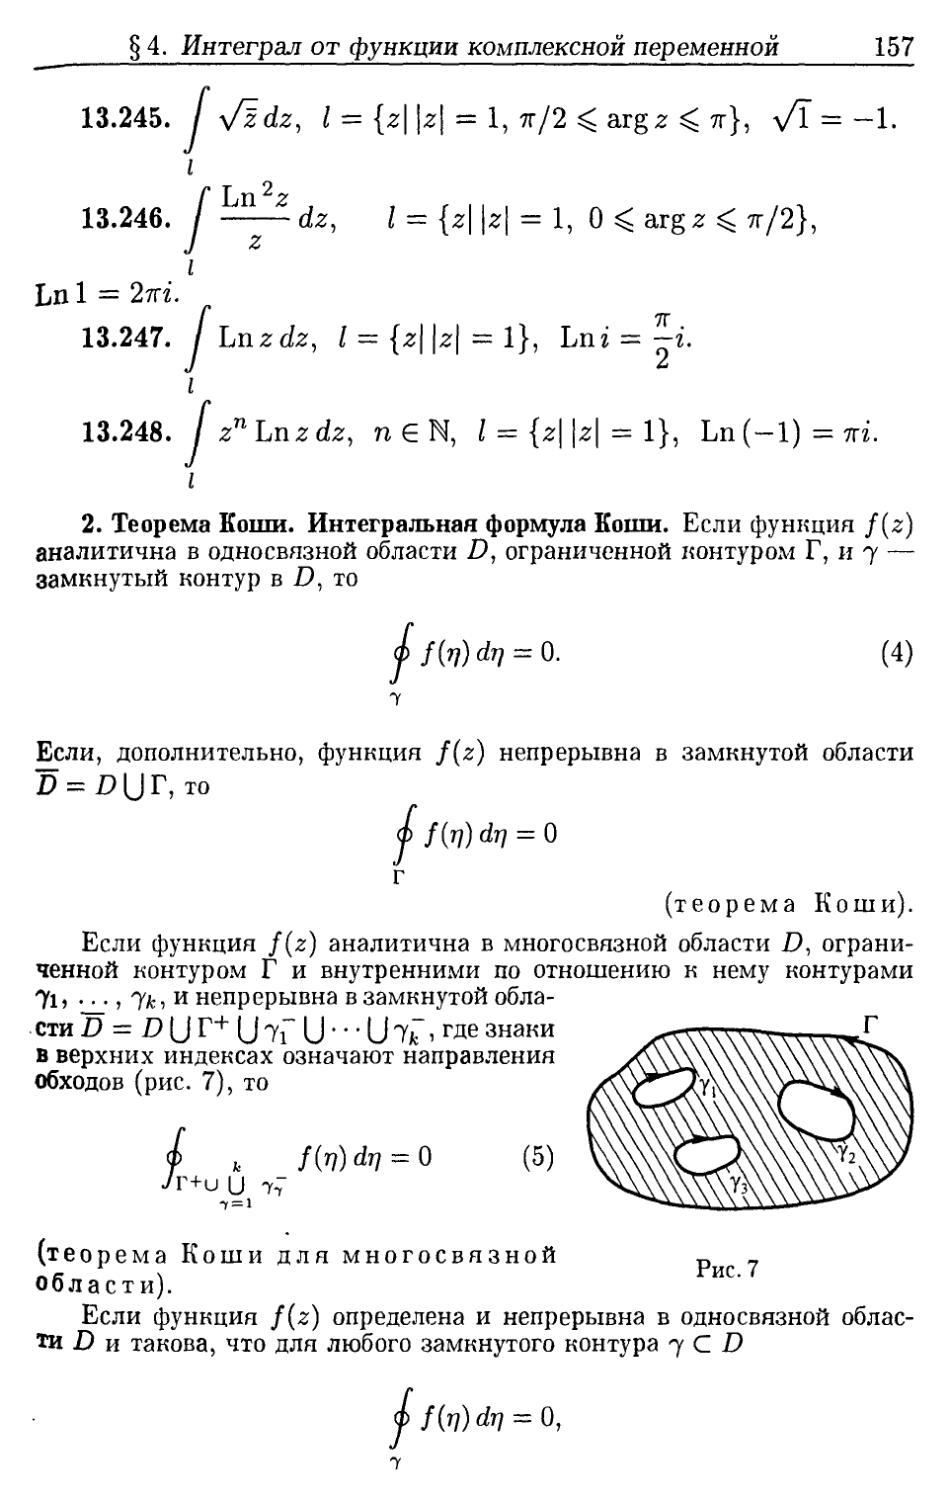 2. Теорема Коши. Интегральная формула Коши